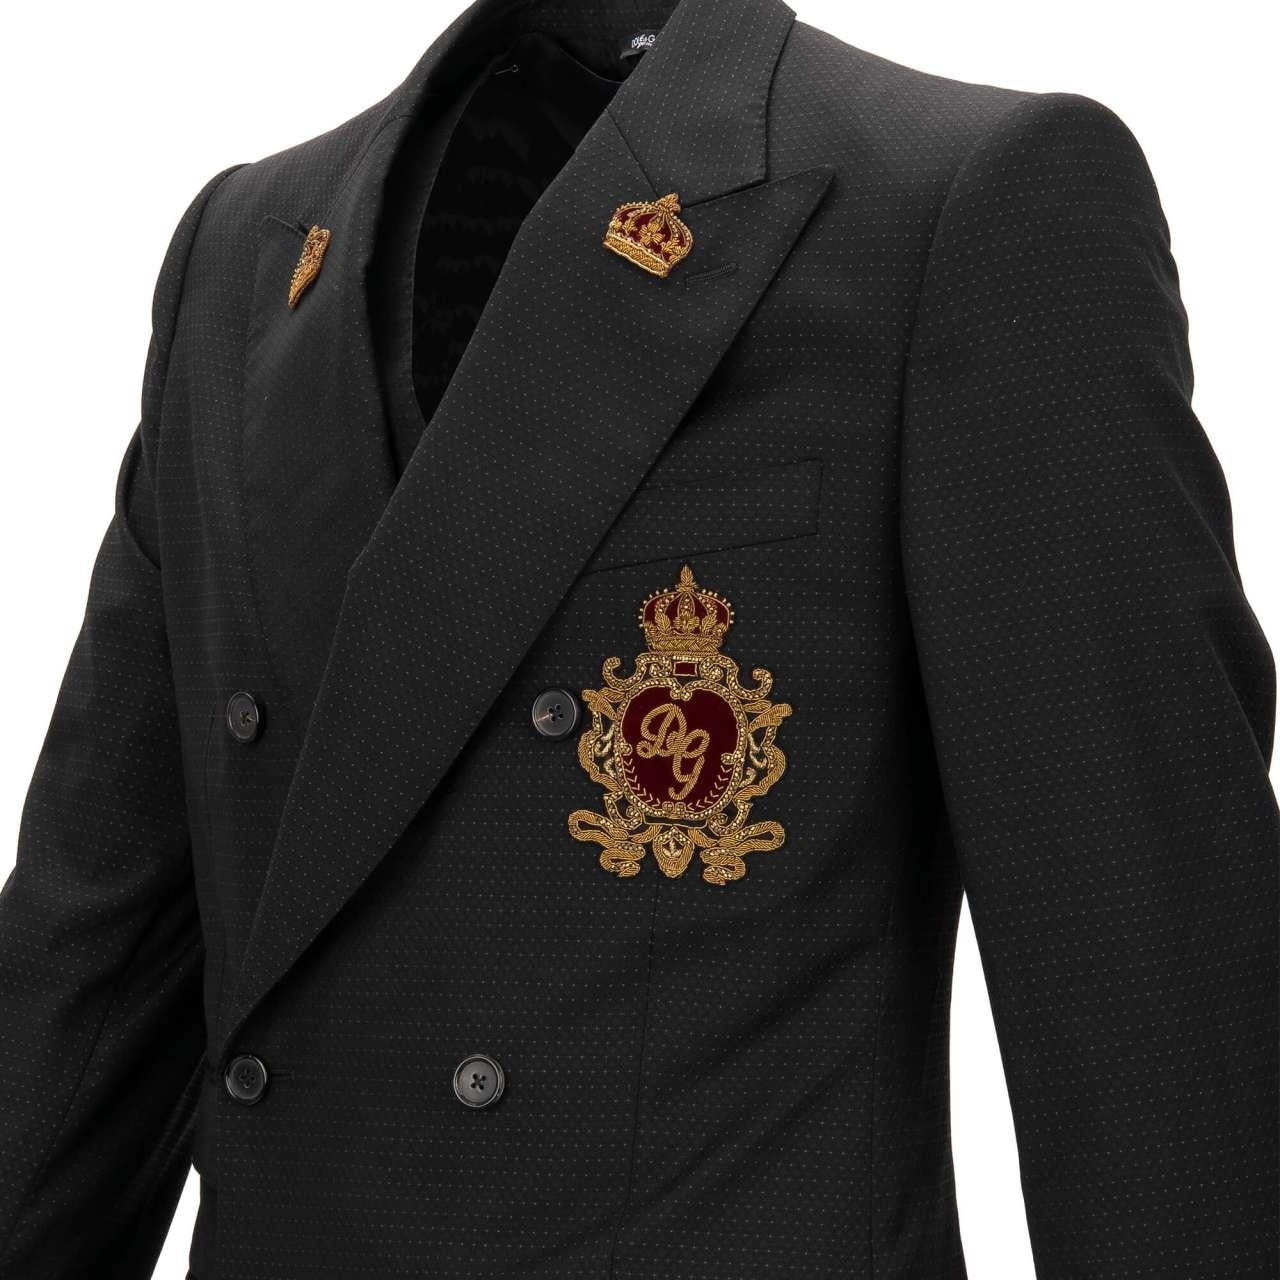 Dolce & Gabbana Jacket with Vest SICILIA Embroidered Logo Crown Black 48 38 M For Sale 1